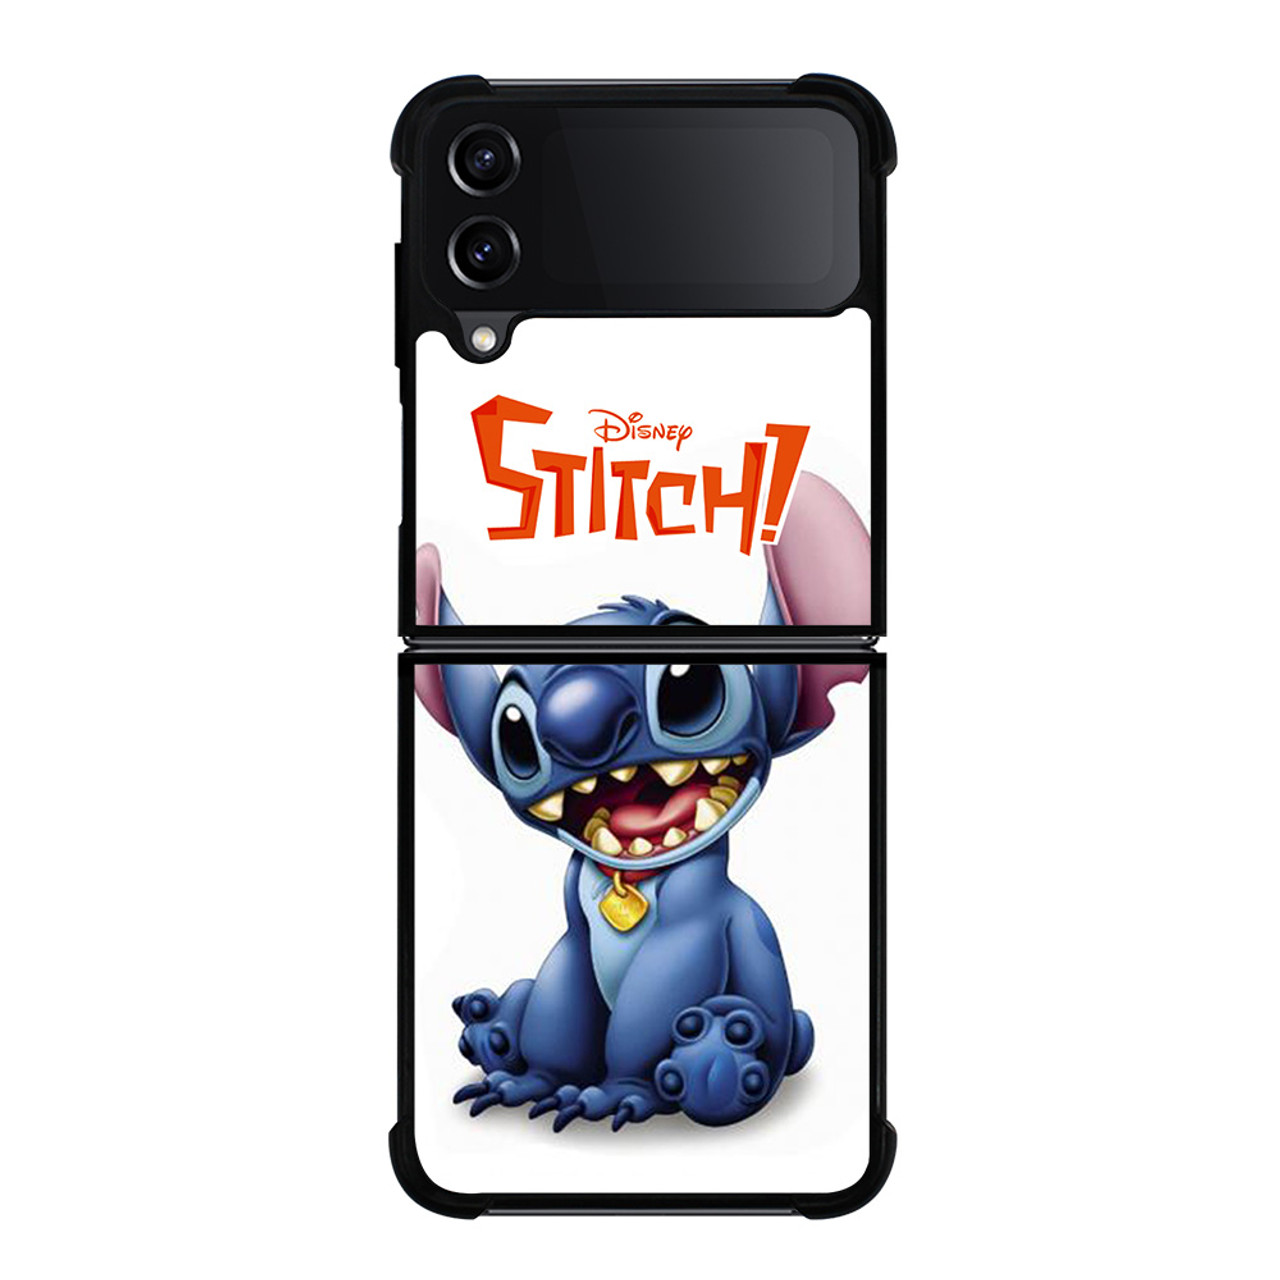 stitch iphone 4 case